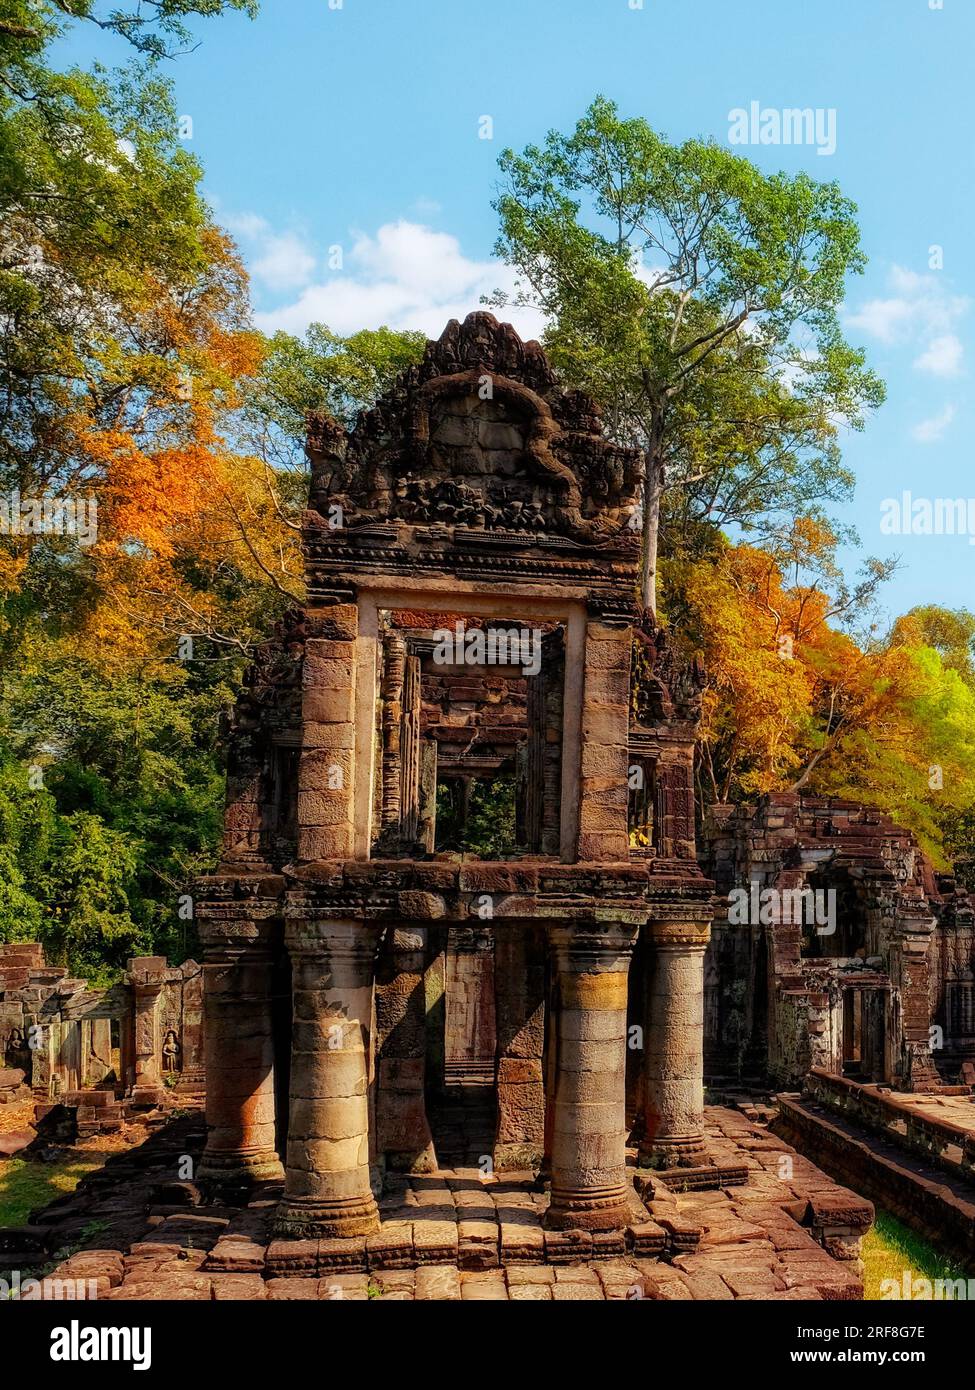 Zeitlose Pracht: Antike Ruinen der Khmer-Tempel, ein Zeugnis der antiken kambodschanischen Architektur und ein mittelalterliches historisches Denkmal. Stockfoto